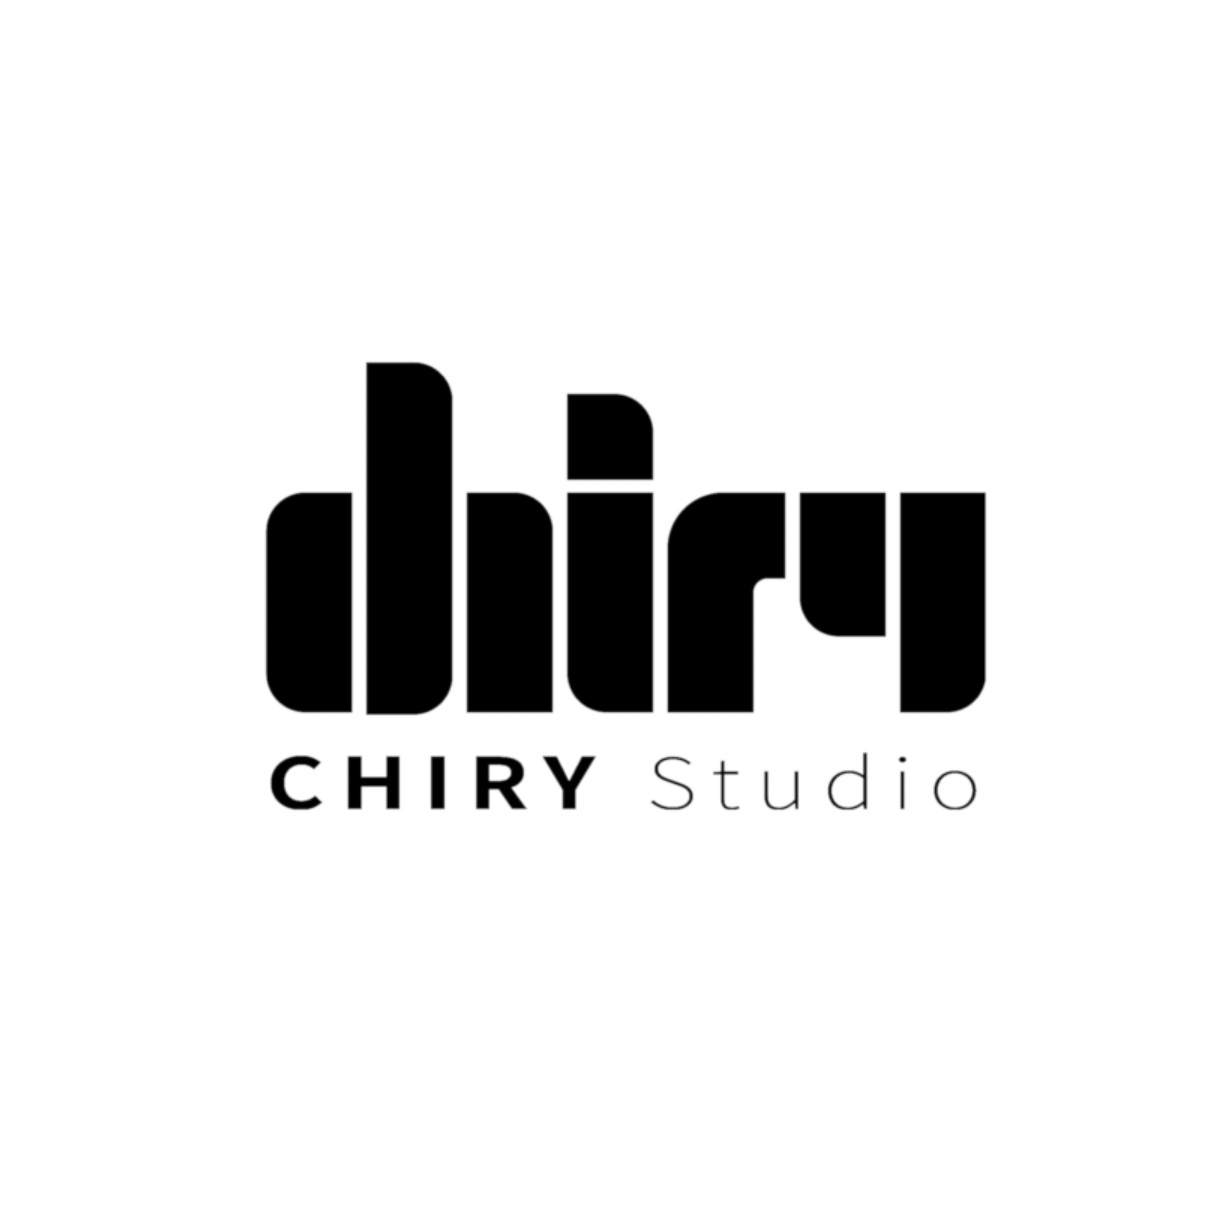 CHIRY Studio 